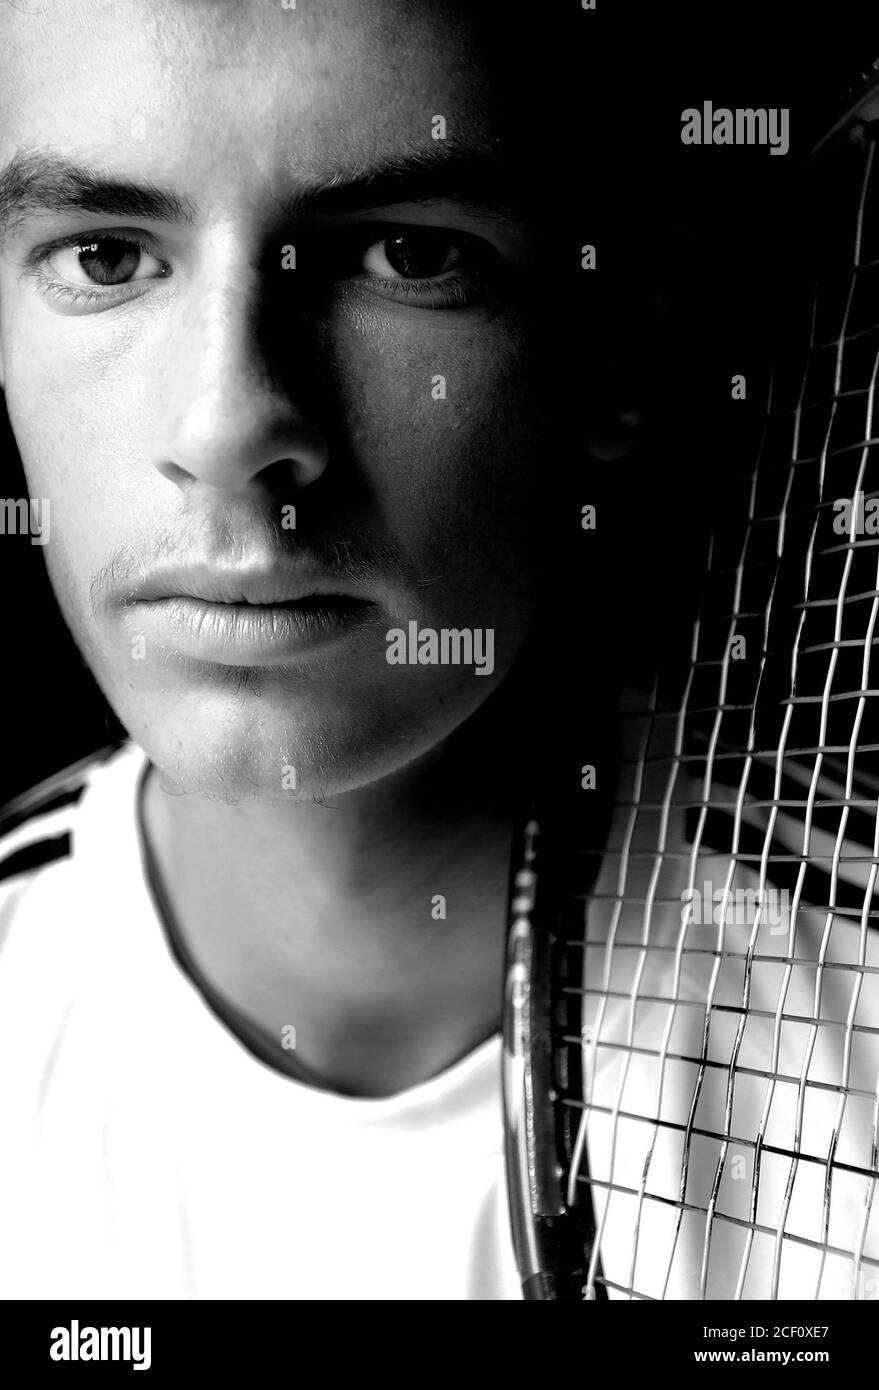 Un des meilleurs joueurs de tennis au monde à seulement 16 ans, Andy Murray né le 15 mai 1987 vu ici avec la maman Judy photos prises en 2004 par Alan Peebles Banque D'Images